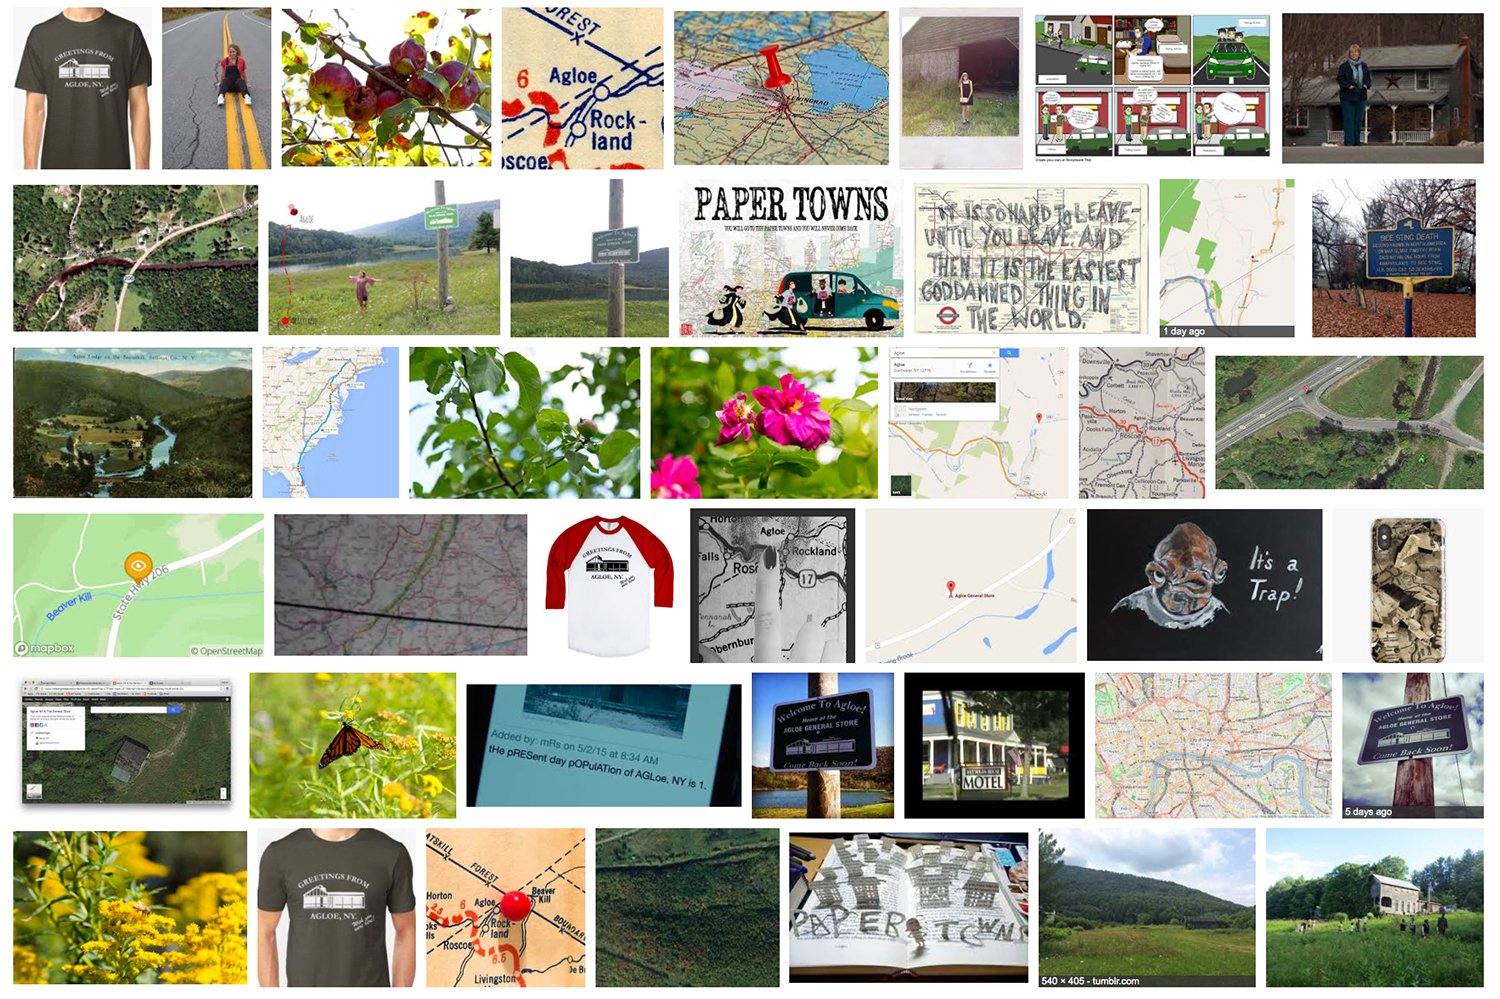   Agloe, NY (Google Image Search Screen Grab of the search term “Agloe, NY”)  Google Image Search Intervention 